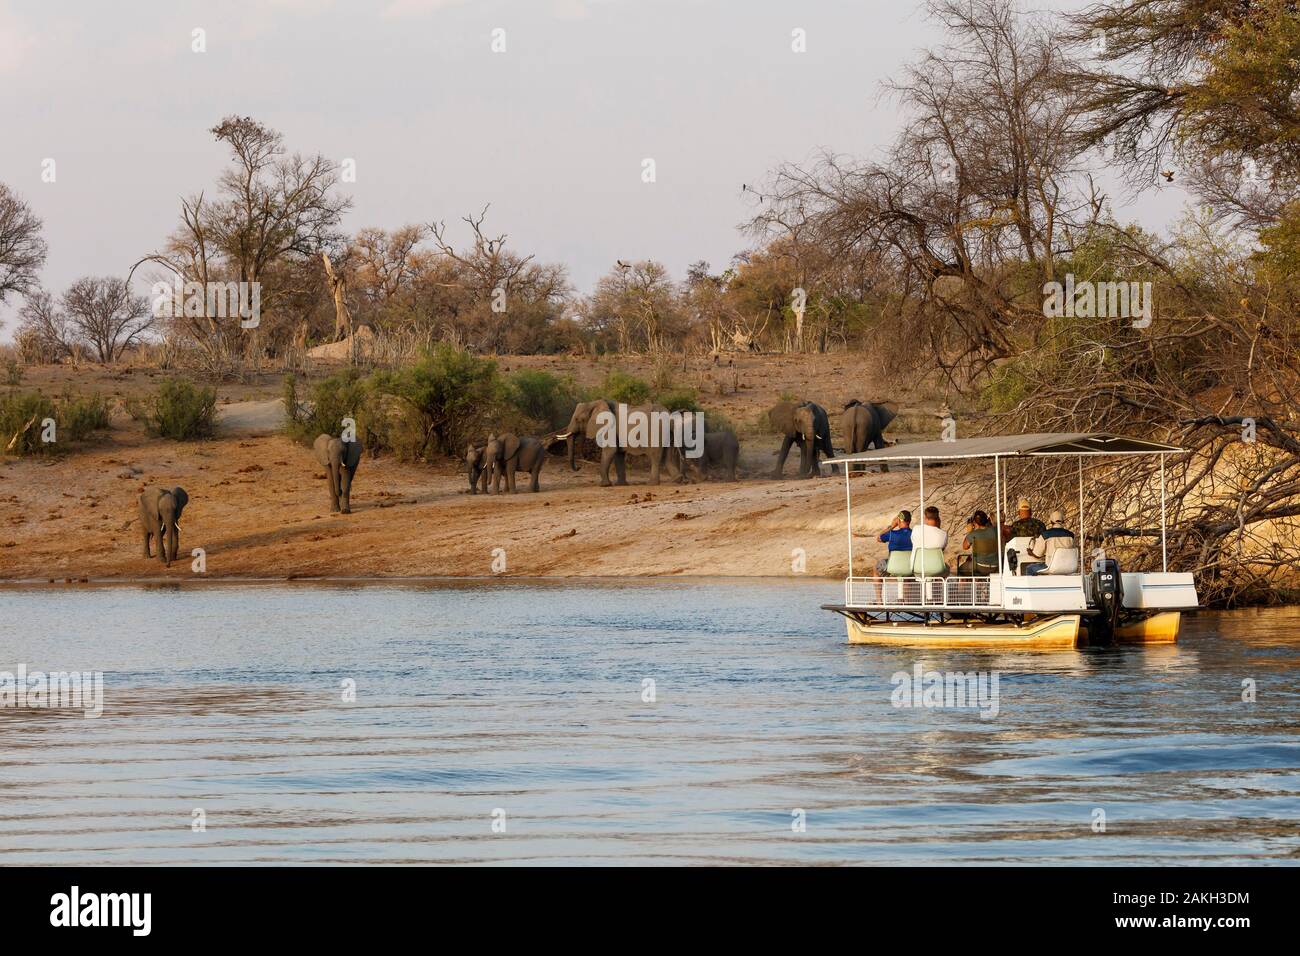 La Namibie, province de Kavango, Parc National de Bwabwata, touristes bateau sur l'Okavango regarder les éléphants Banque D'Images